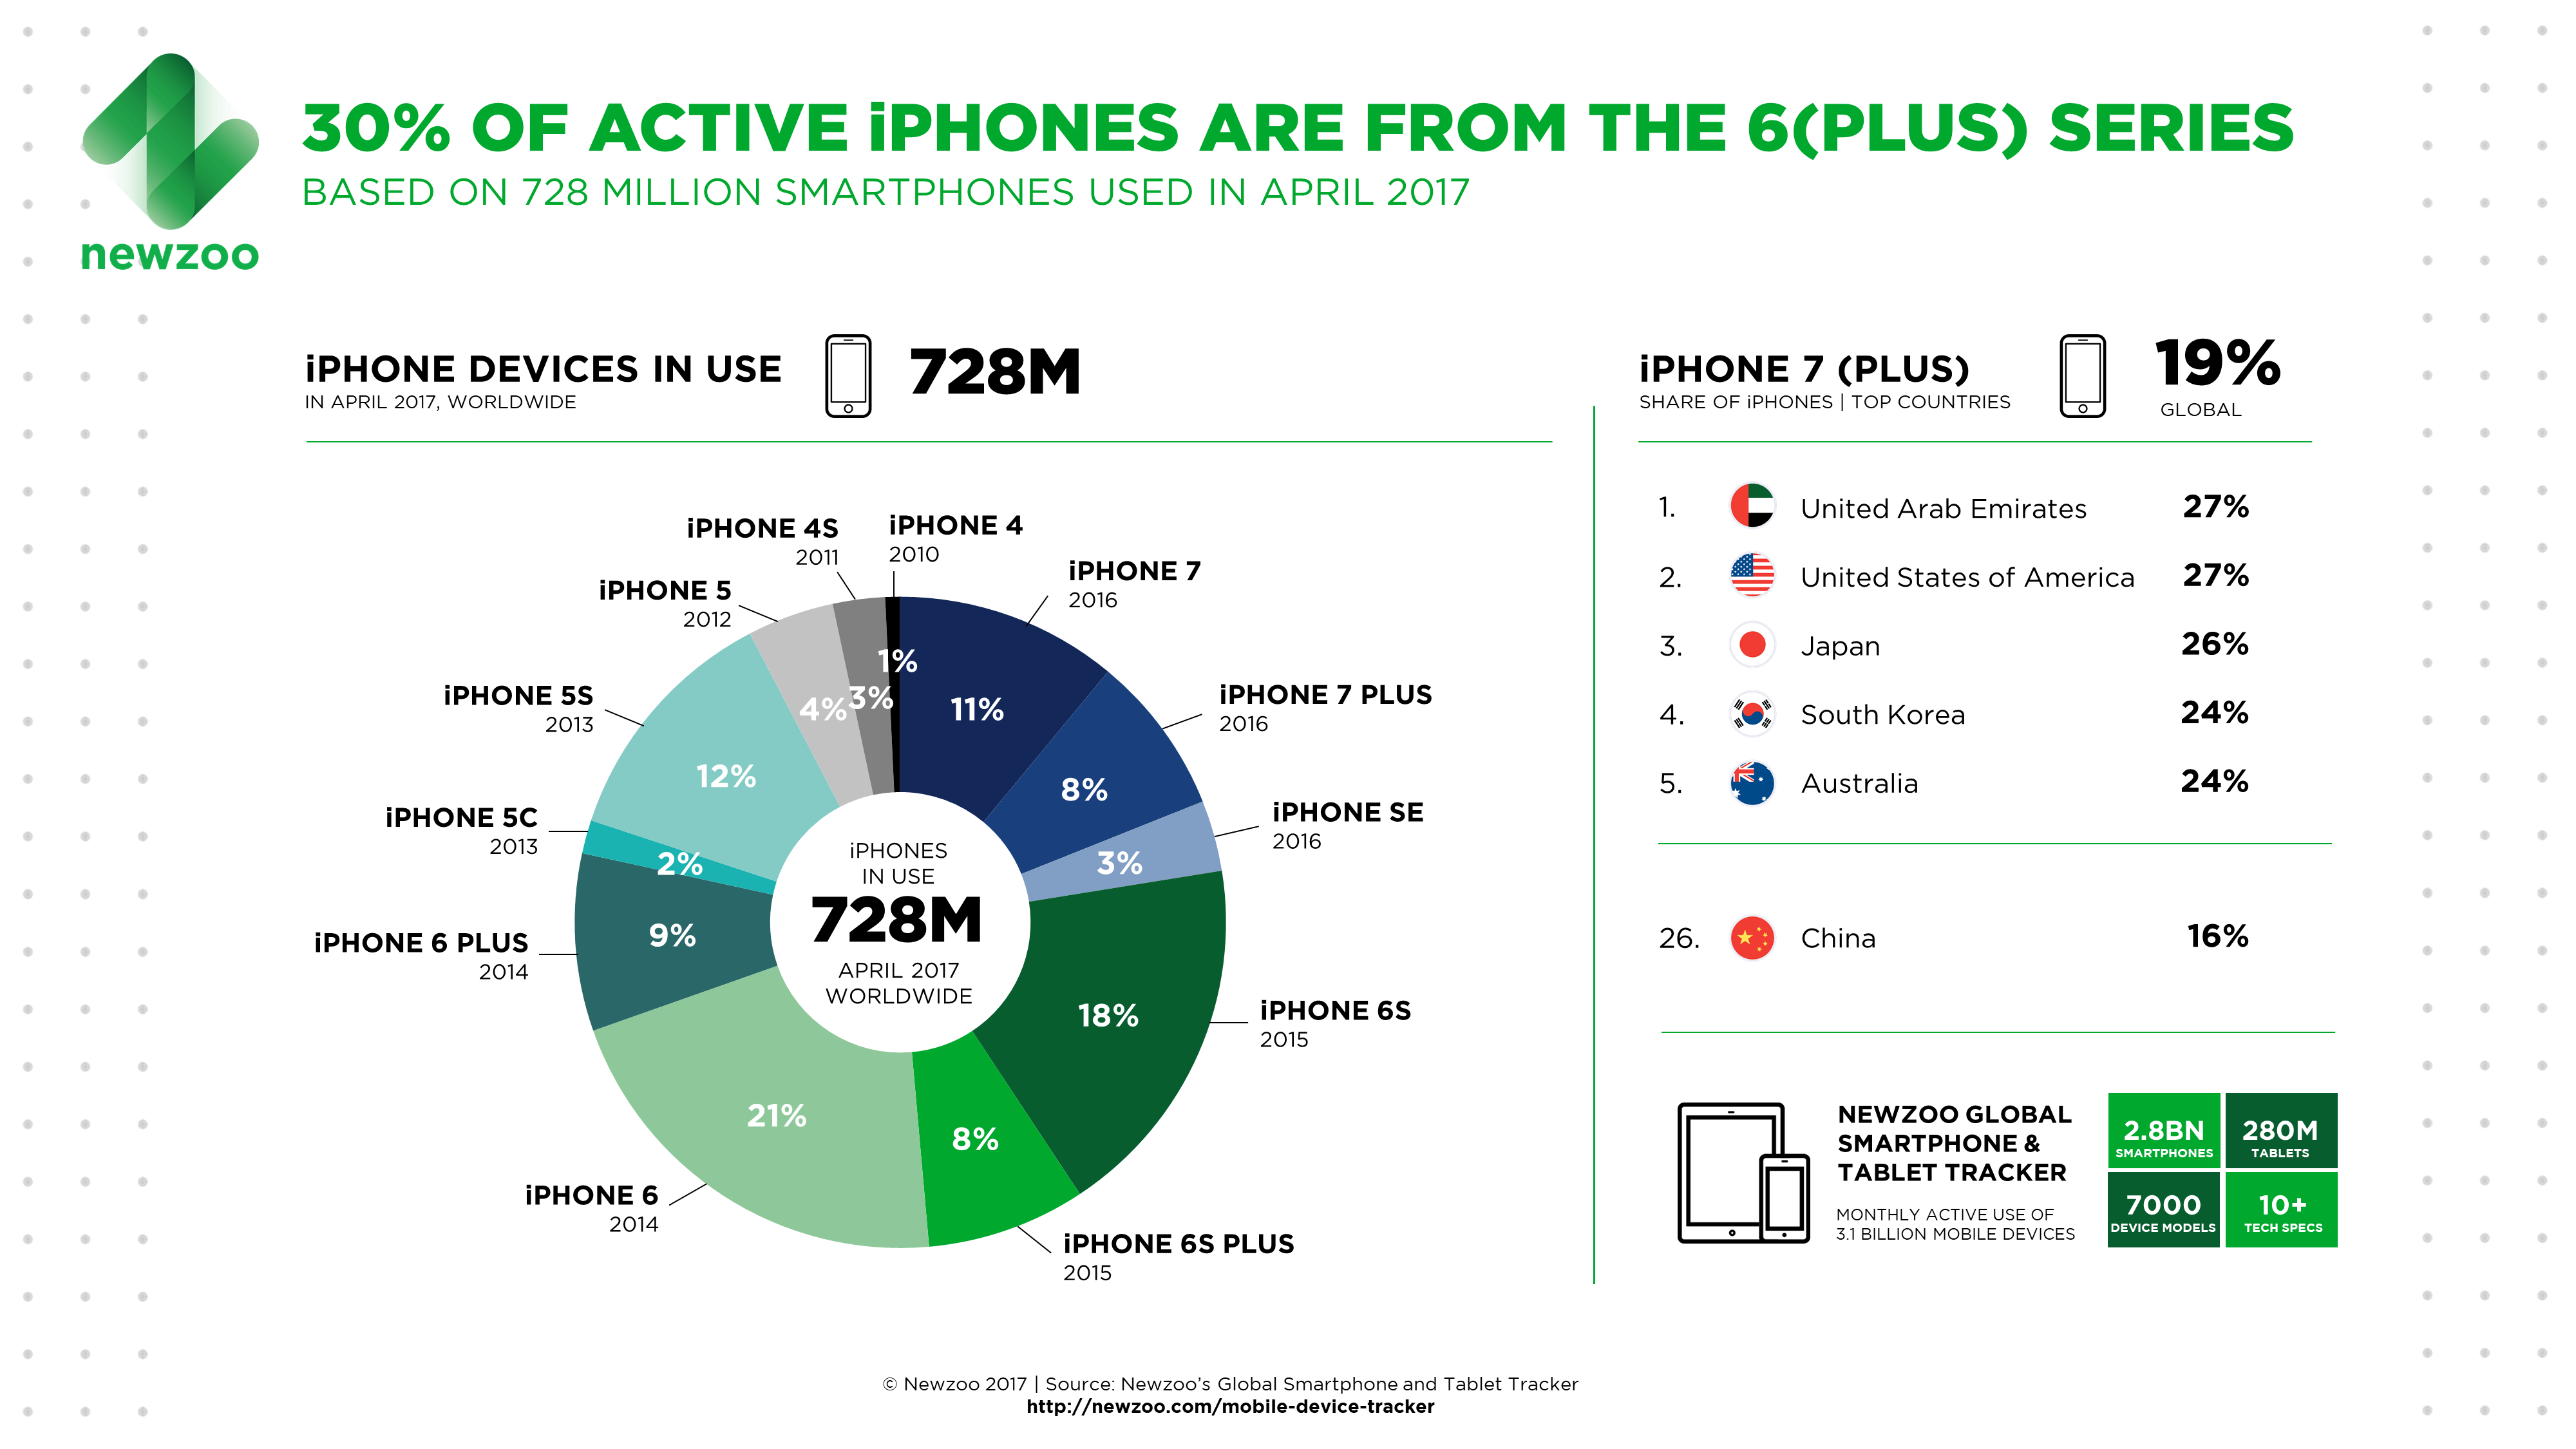 iPhone 6 (Plus) behoort tot 30% van de actieve iPhones